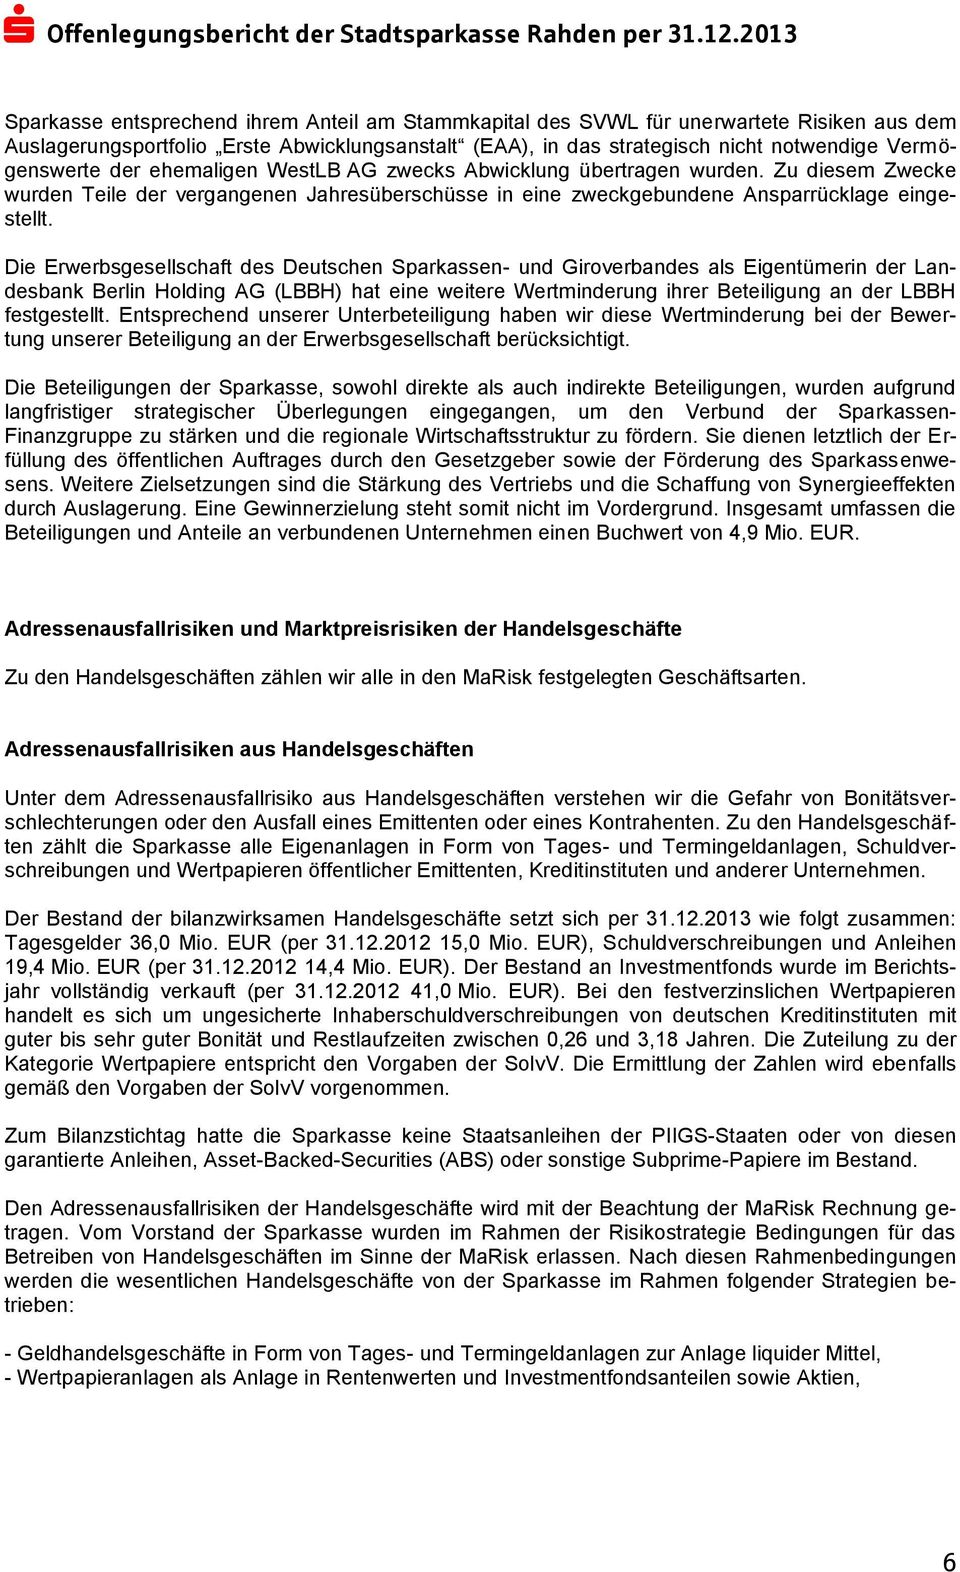 Die Erwerbsgesellschaft des Deutschen Sparkassen- und Giroverbandes als Eigentümerin der Landesbank Berlin Holding AG (LBBH) hat eine weitere Wertminderung ihrer Beteiligung an der LBBH festgestellt.